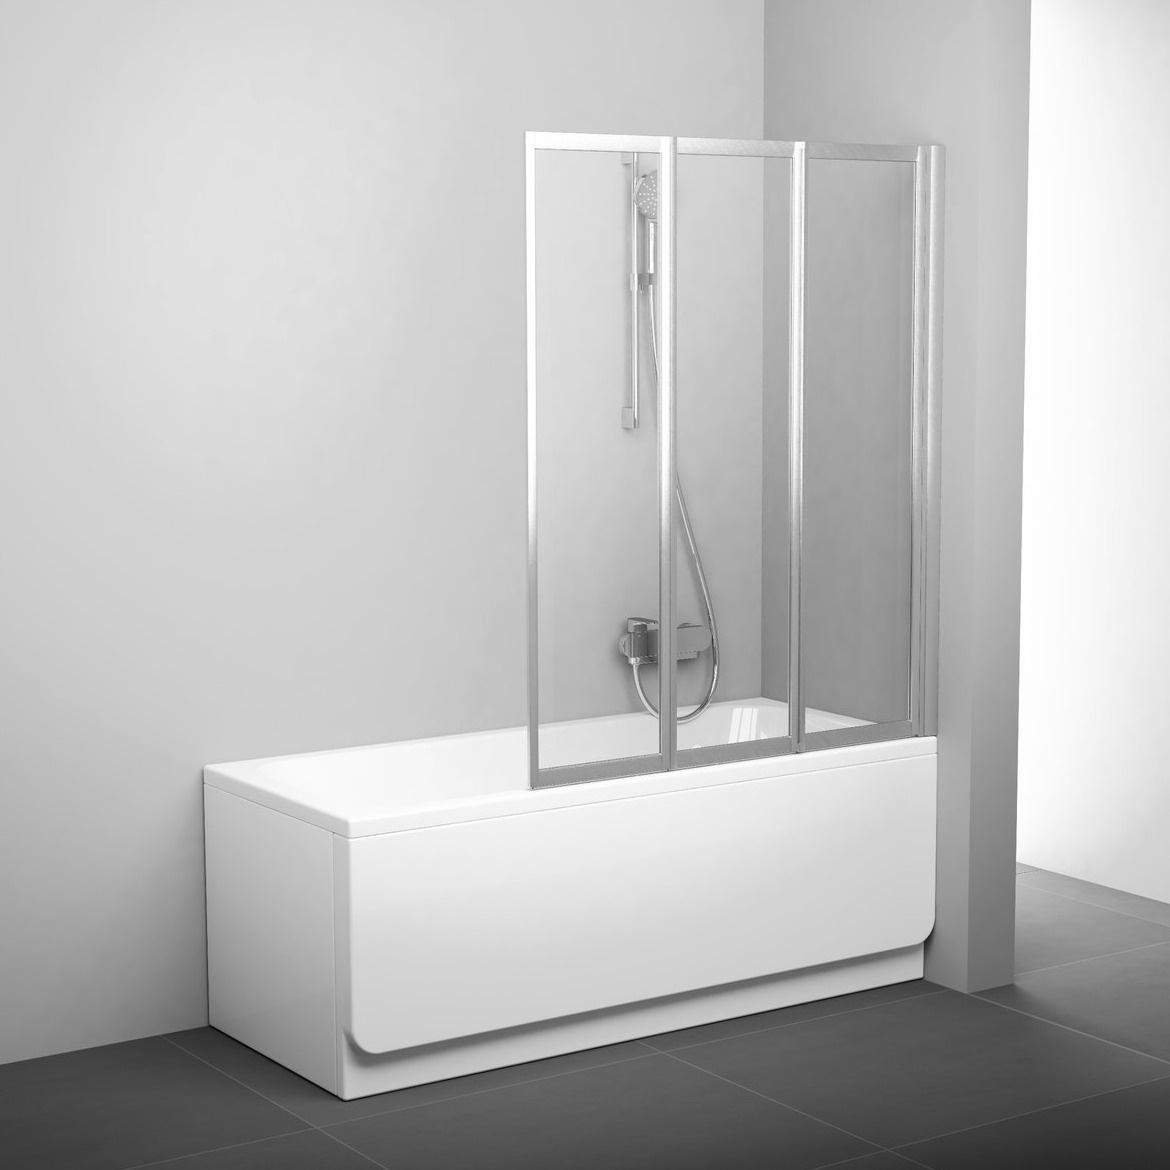 Шторка стеклянная для ванны универсальная трехсекционная складная 140x100см RAVAK BEHAPPY II VS3 100 стекло прозрачное 3мм профиль сатин 795P0U00Z1